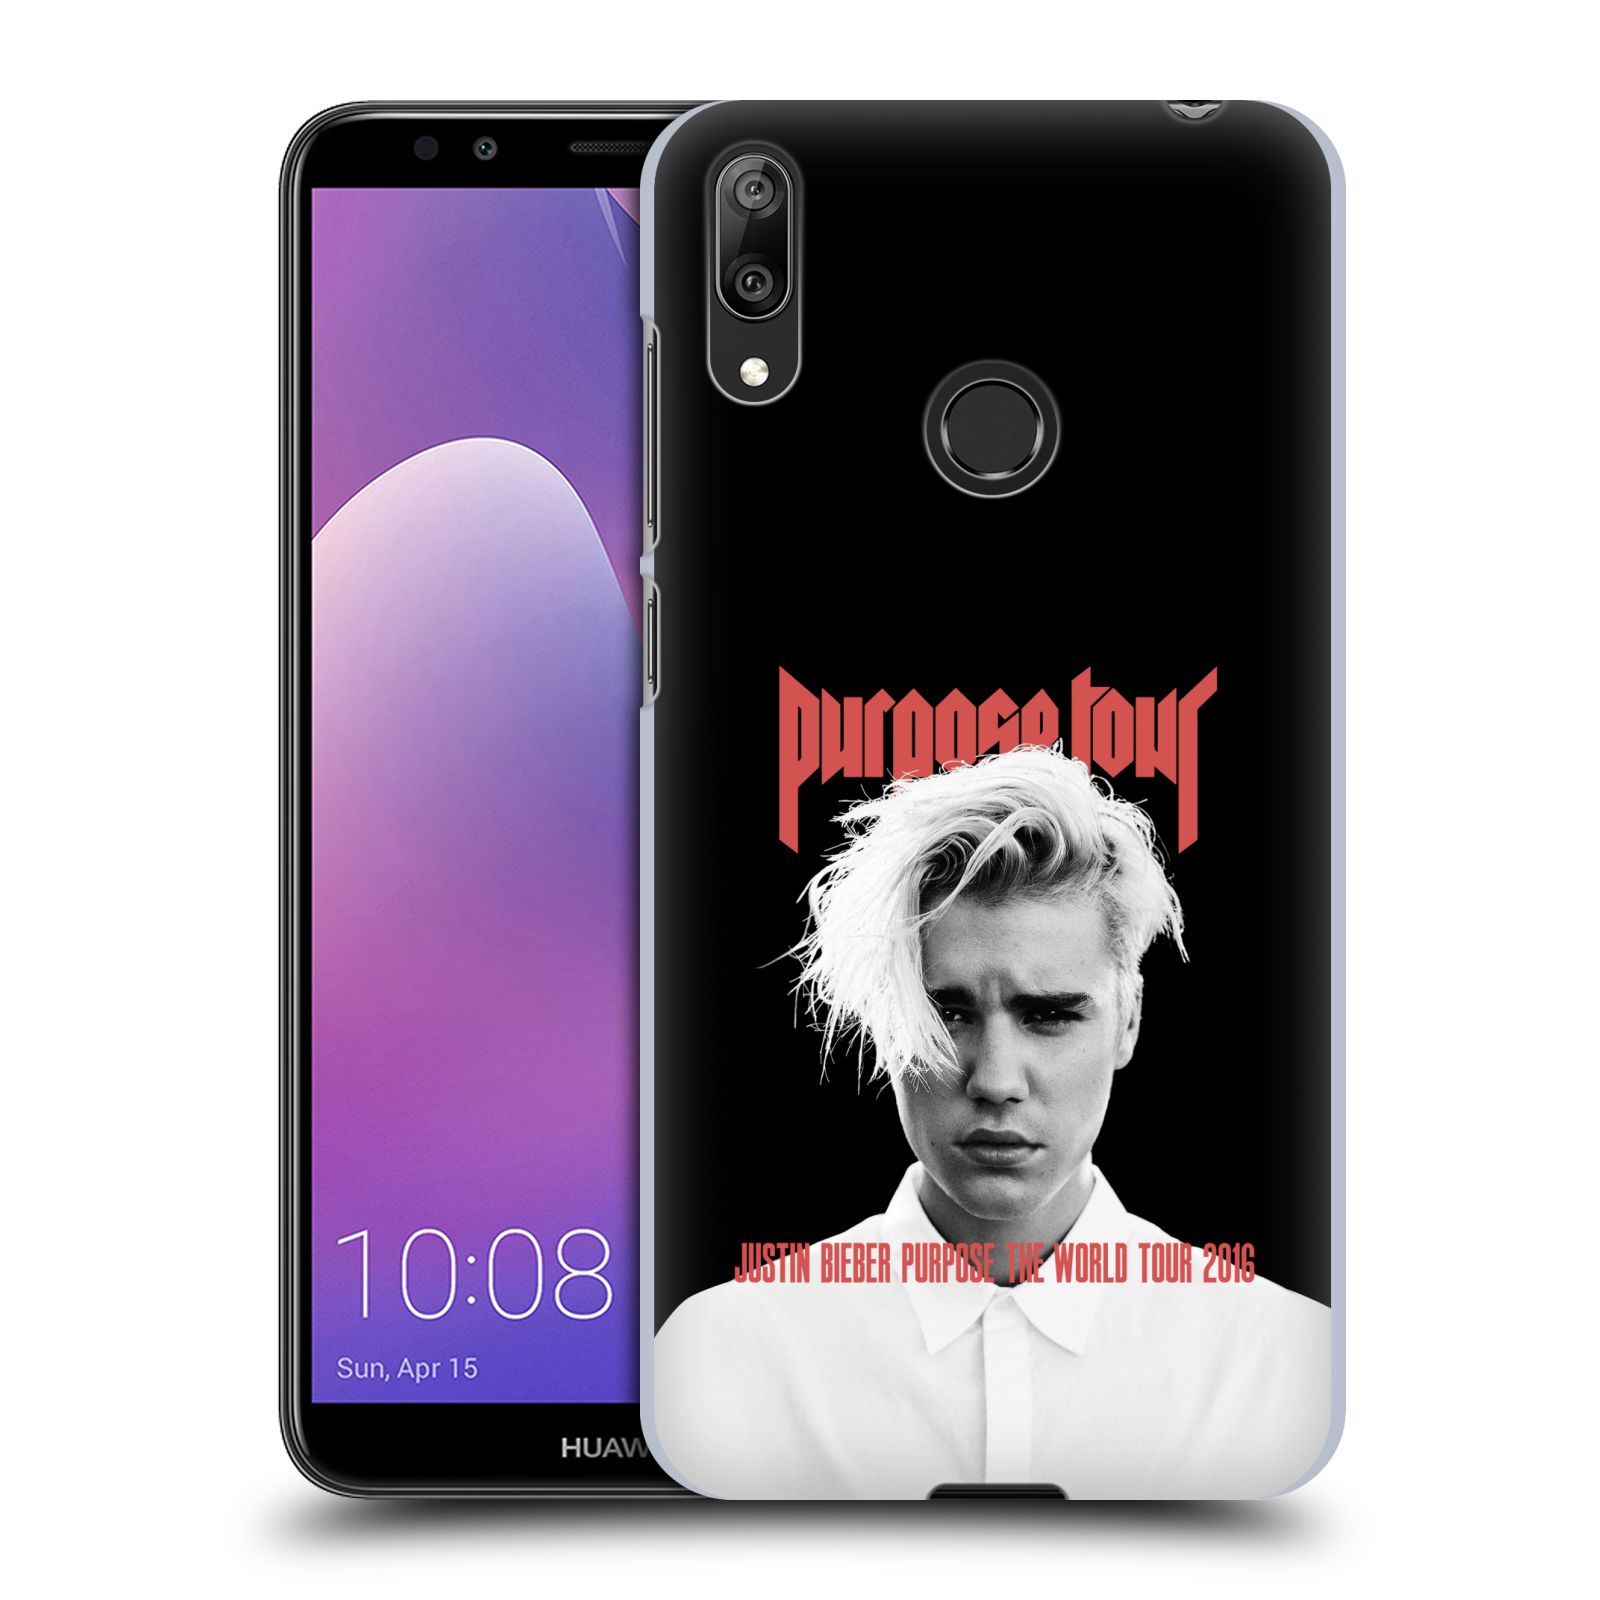 Pouzdro na mobil Huawei Y7 2019 - Head Case - Justin Bieber foto Purpose tour černé pozadí